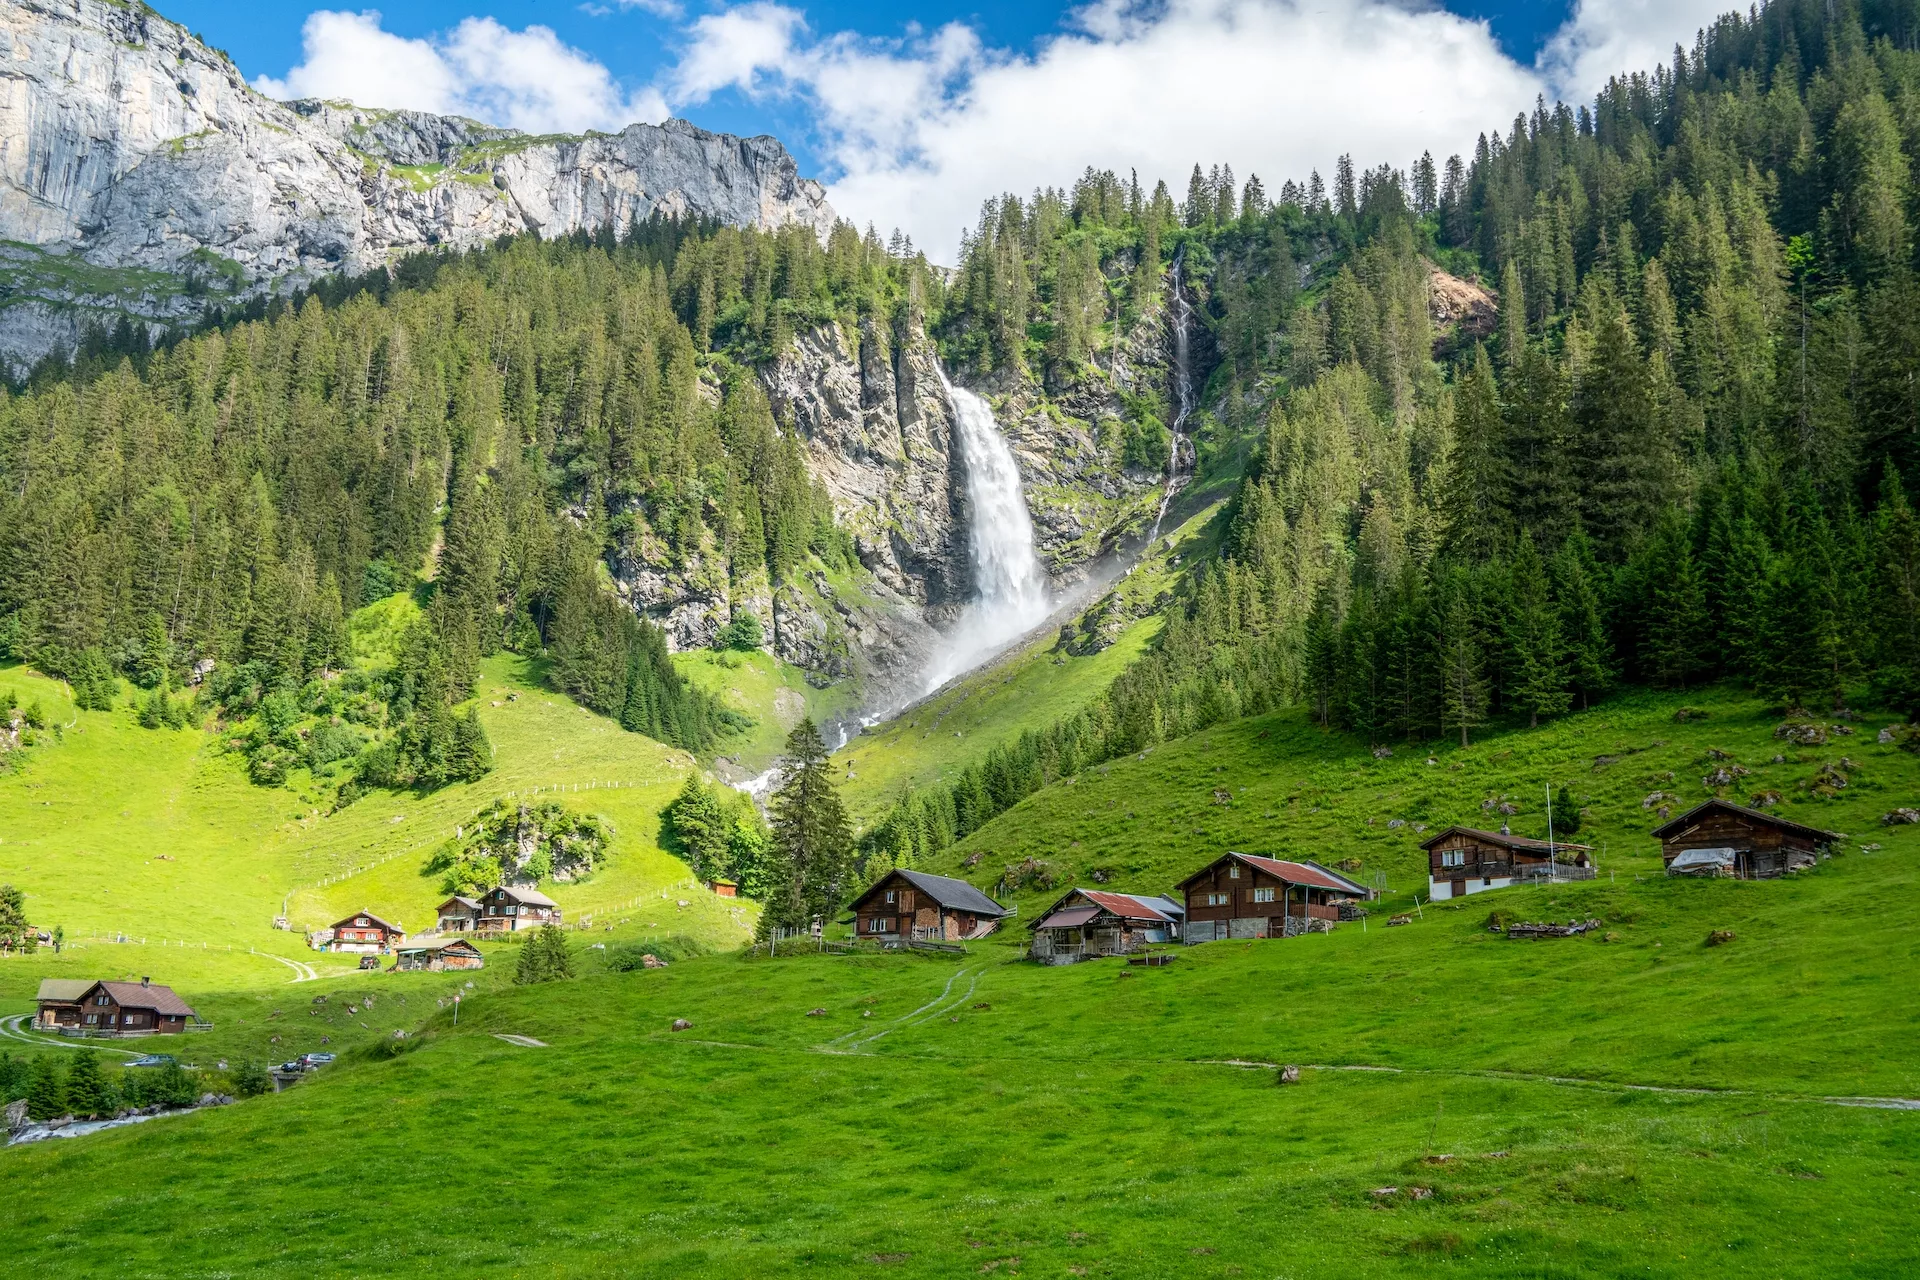 La merveilleuse chute d'eau de Stauber dans la vallée de Schachen